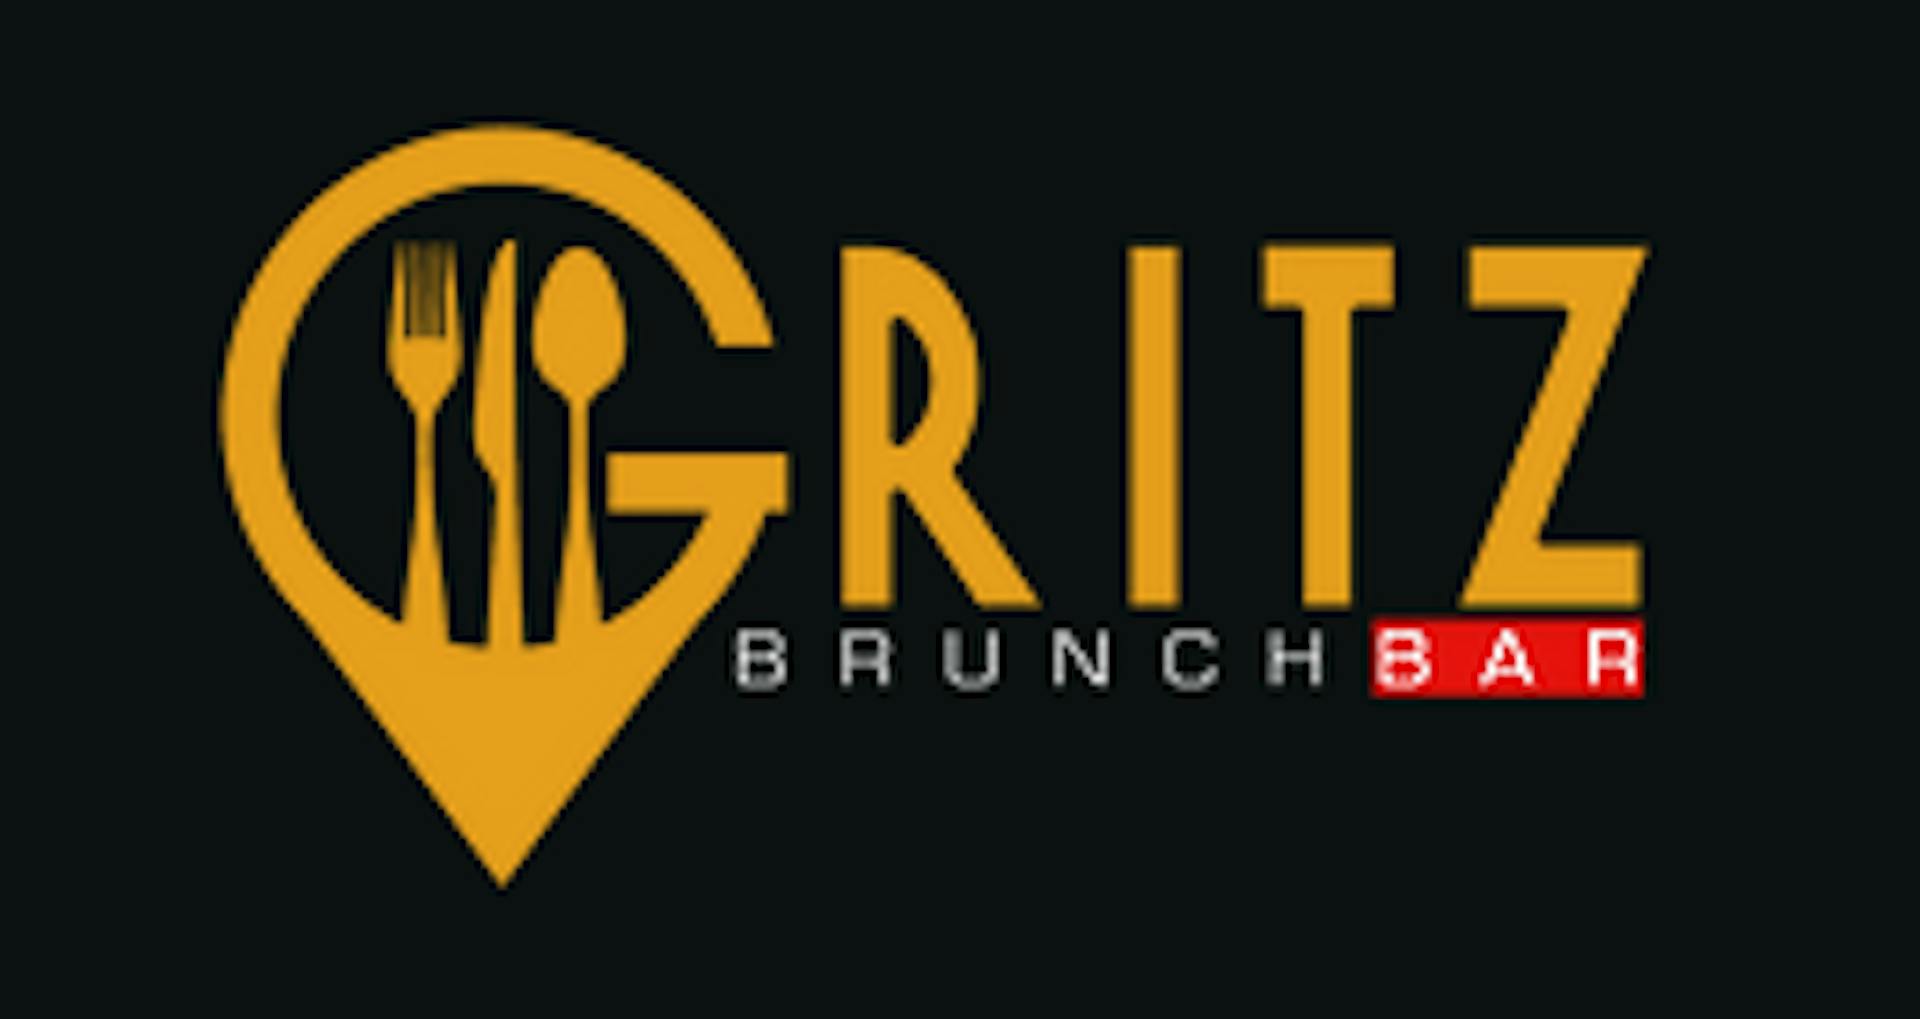 Gritz Brunch Bar